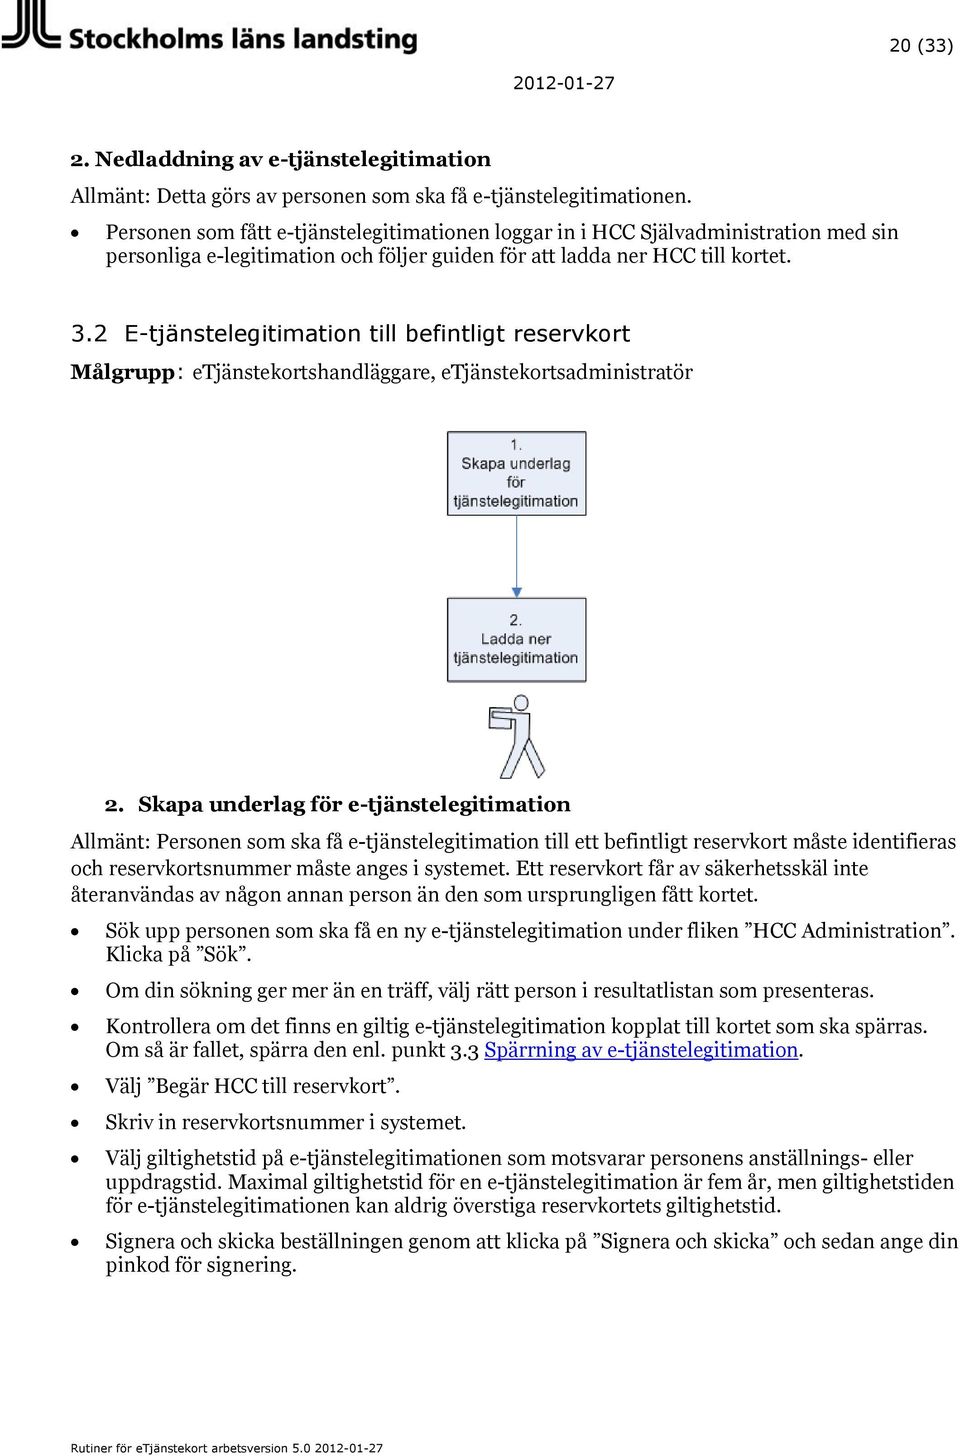 2 E-tjänstelegitimation till befintligt reservkort Målgrupp: etjänstekortshandläggare, etjänstekortsadministratör 2.